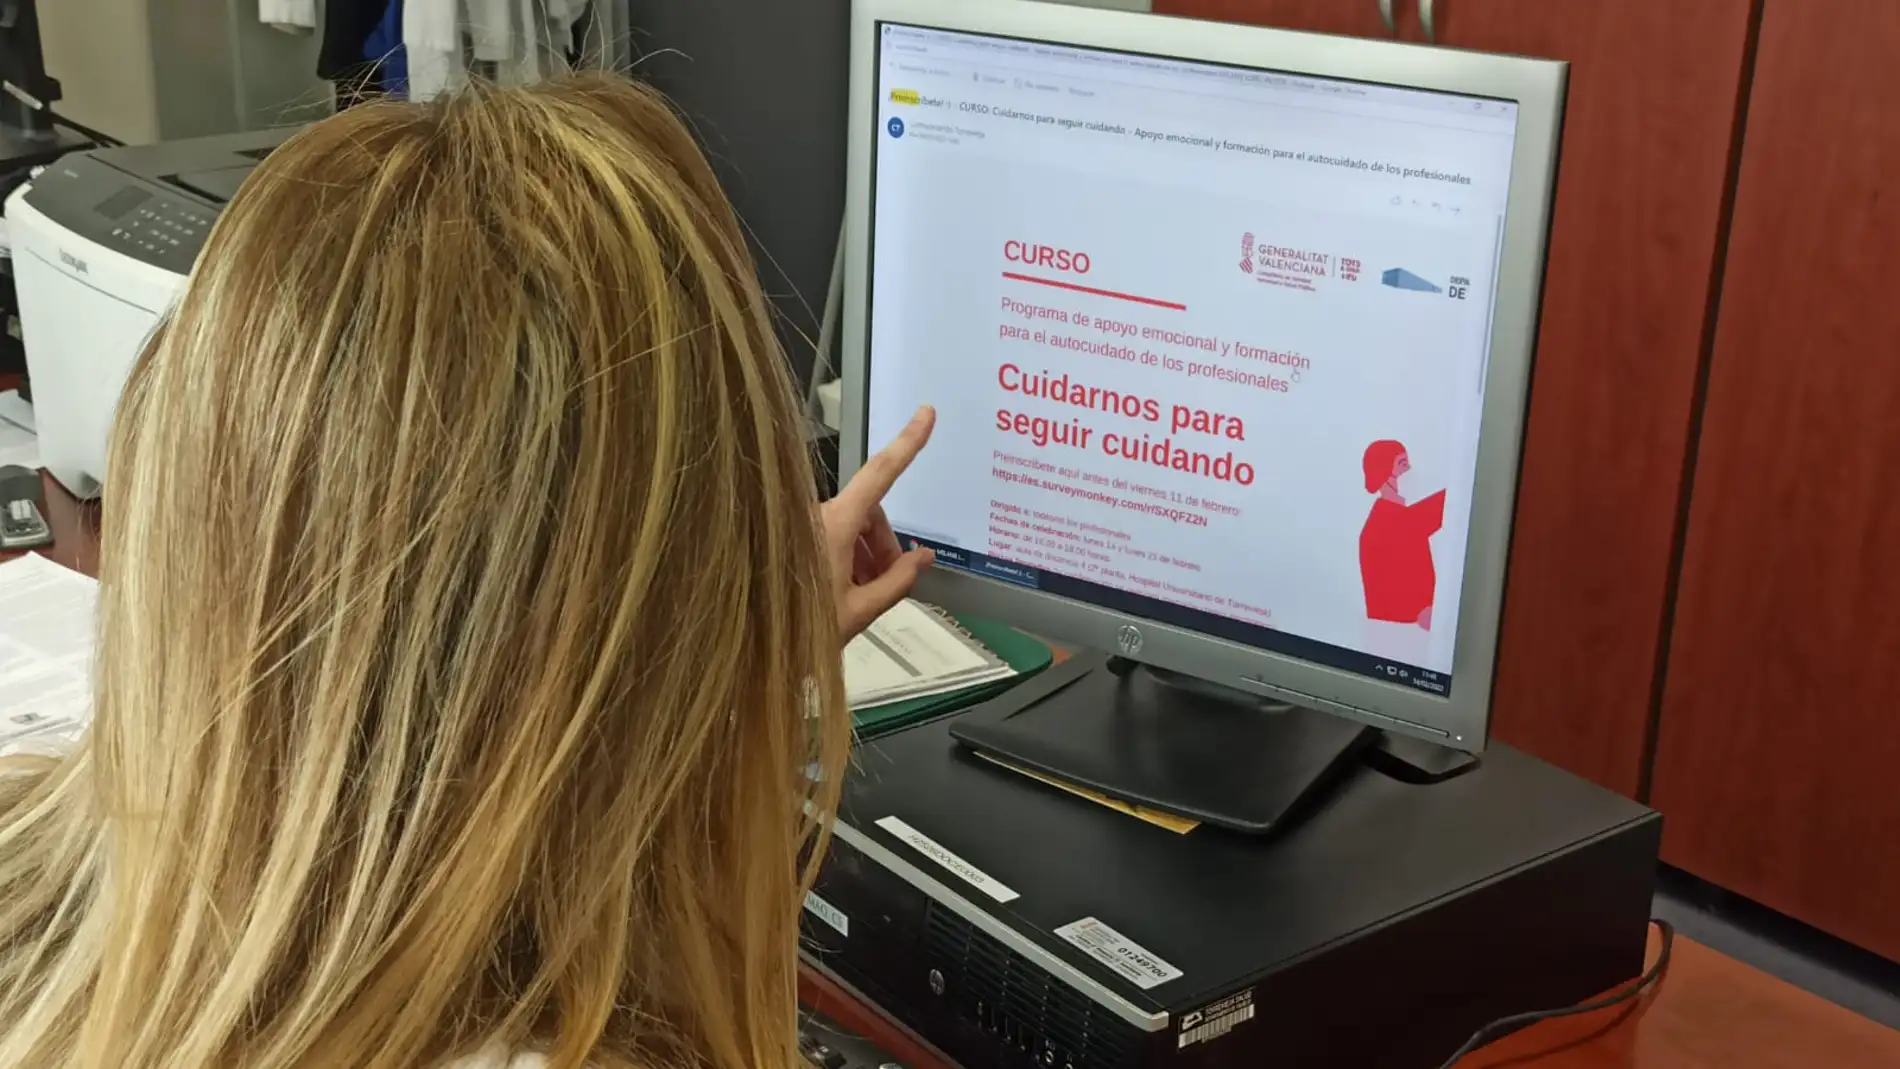 El Hospital de Torrevieja pone en marcha un programa de apoyo emocional y formación para el autocuidado de sus profesionales 